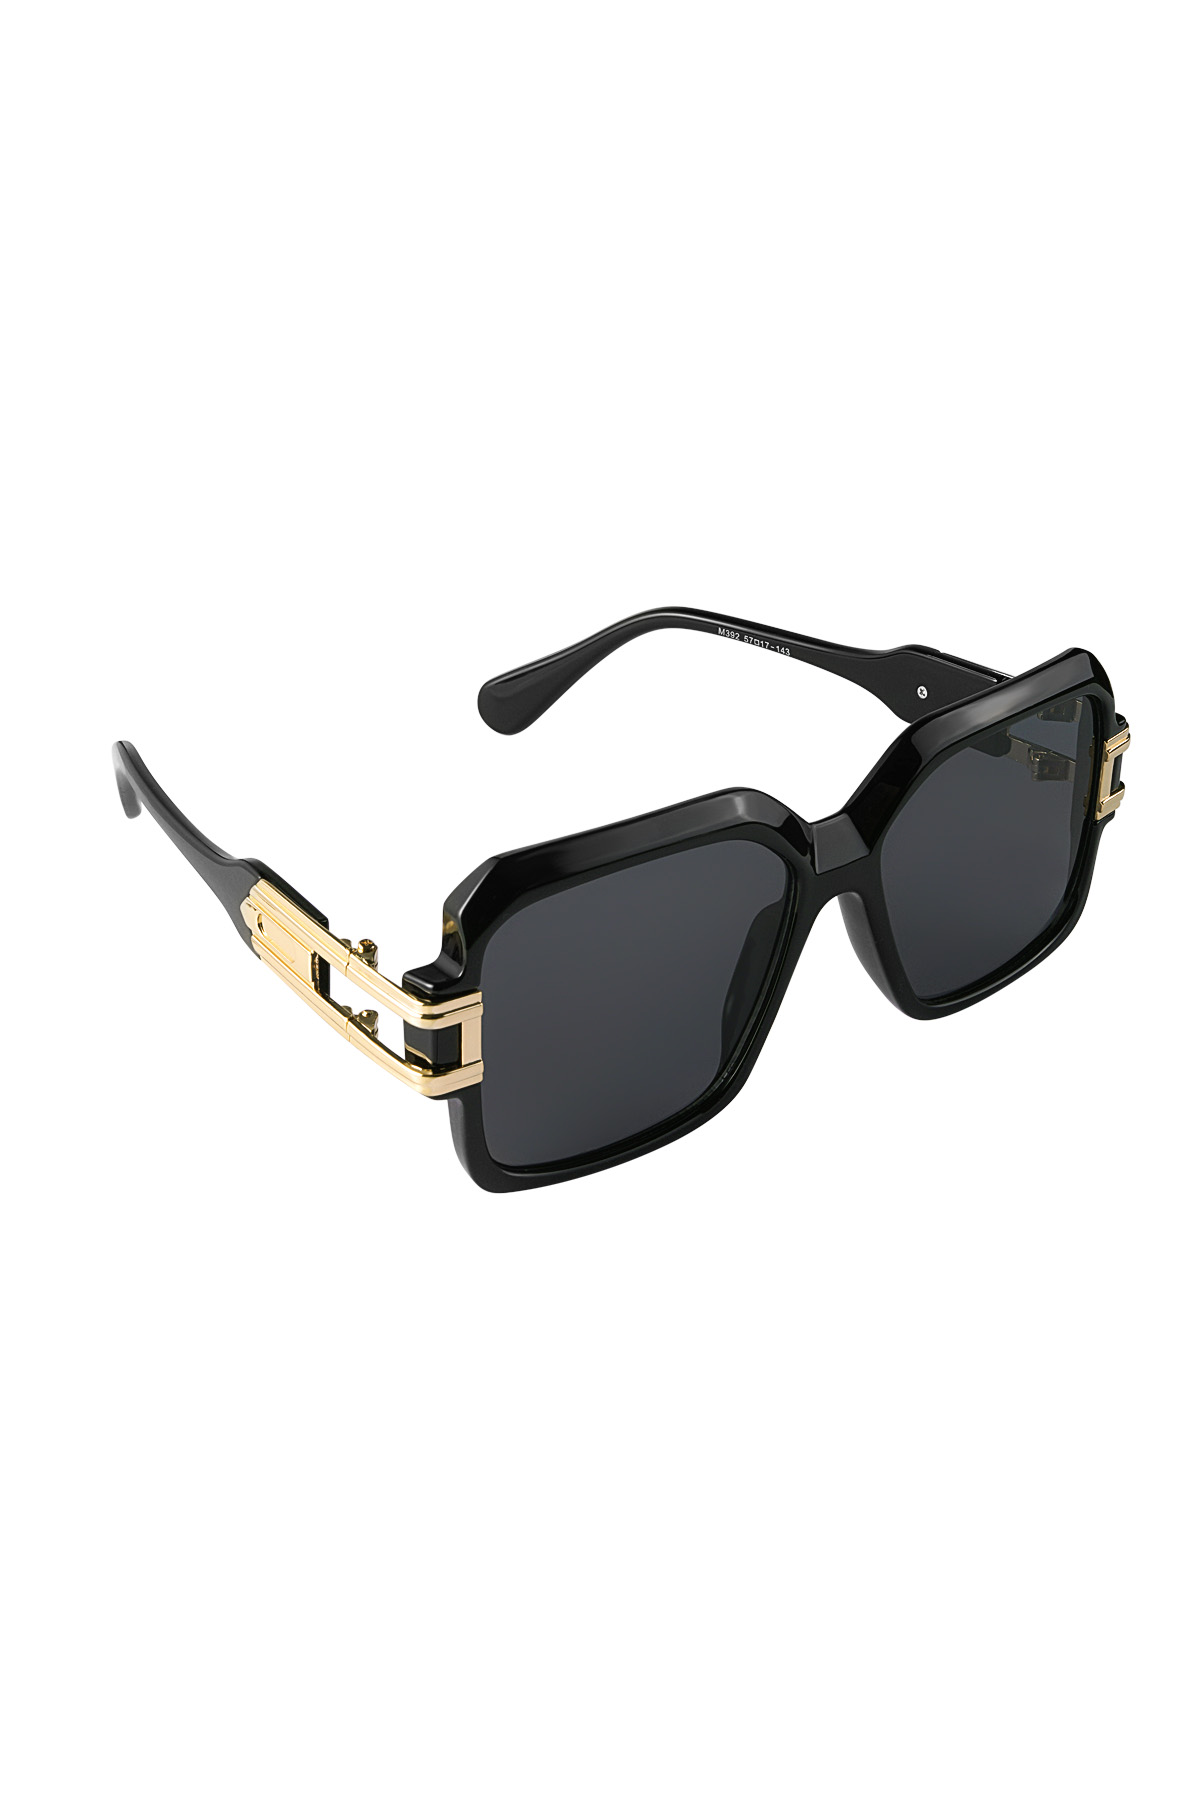 Coole Sonnenbrille mit Rahmen – schwarz